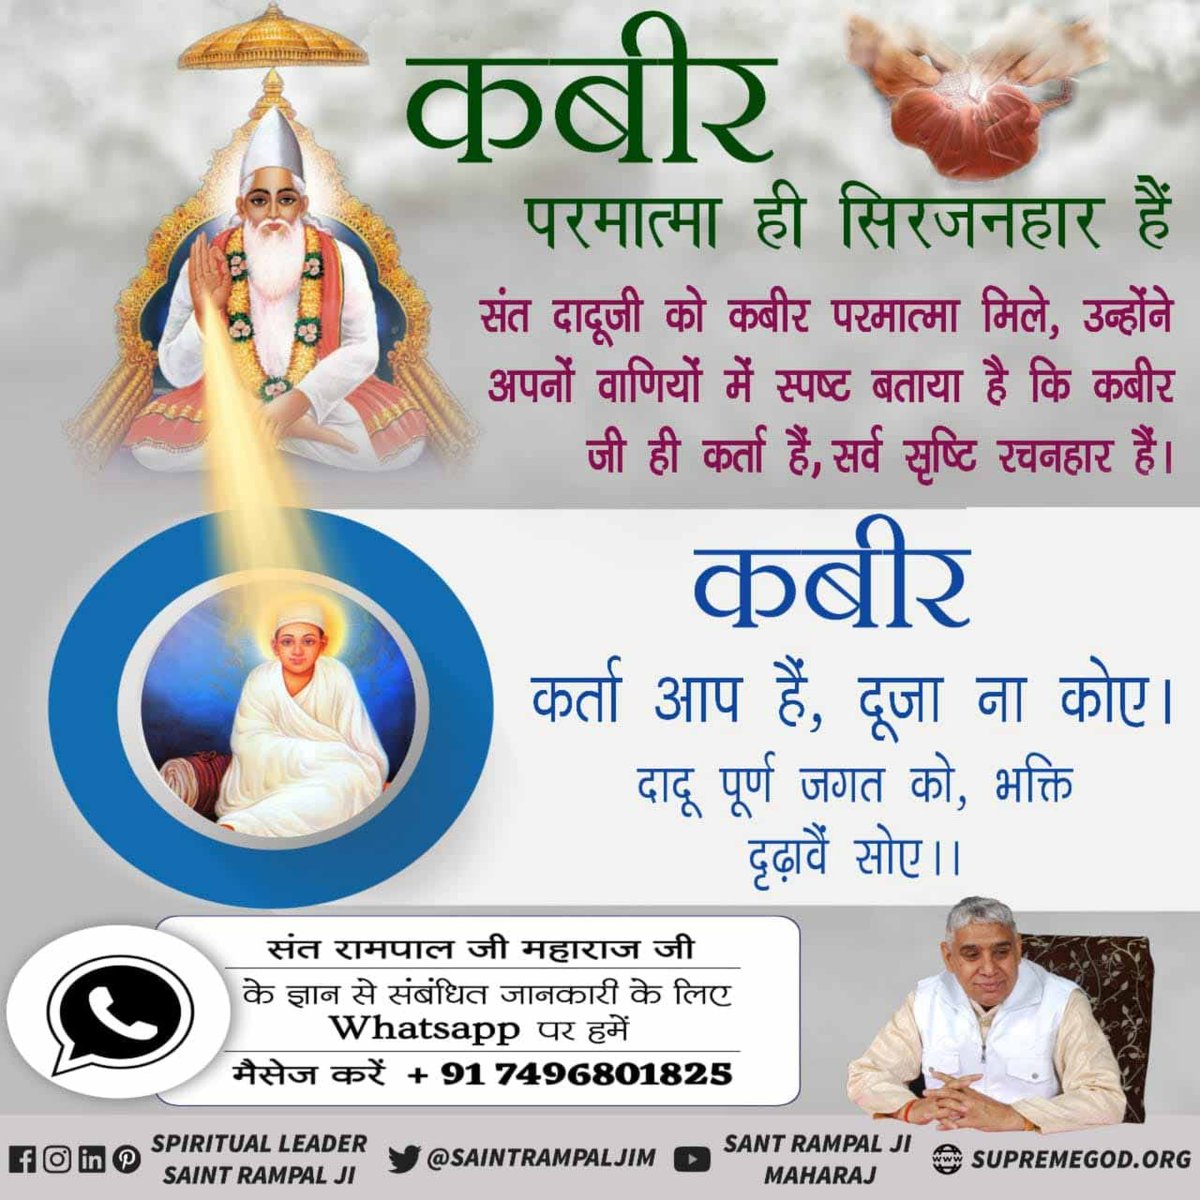 #अविनाशी_परमात्मा_कबीर 'सर्व शक्तिमान परमेश्वर कबीर' पूर्ण परमात्मा आयु बढ़ा सकता है और कोई भी रोग को नष्ट कर सकता है। - ऋग्वेद मण्डल 10 सुक्त 161 मंत्र 2, 5, सुक्त 162 मंत्र 5, सुक्त 163 मंत्र 1 - 3 ⤵️ ⤵️ Sant Rampal Ji Maharaj App Download करे l